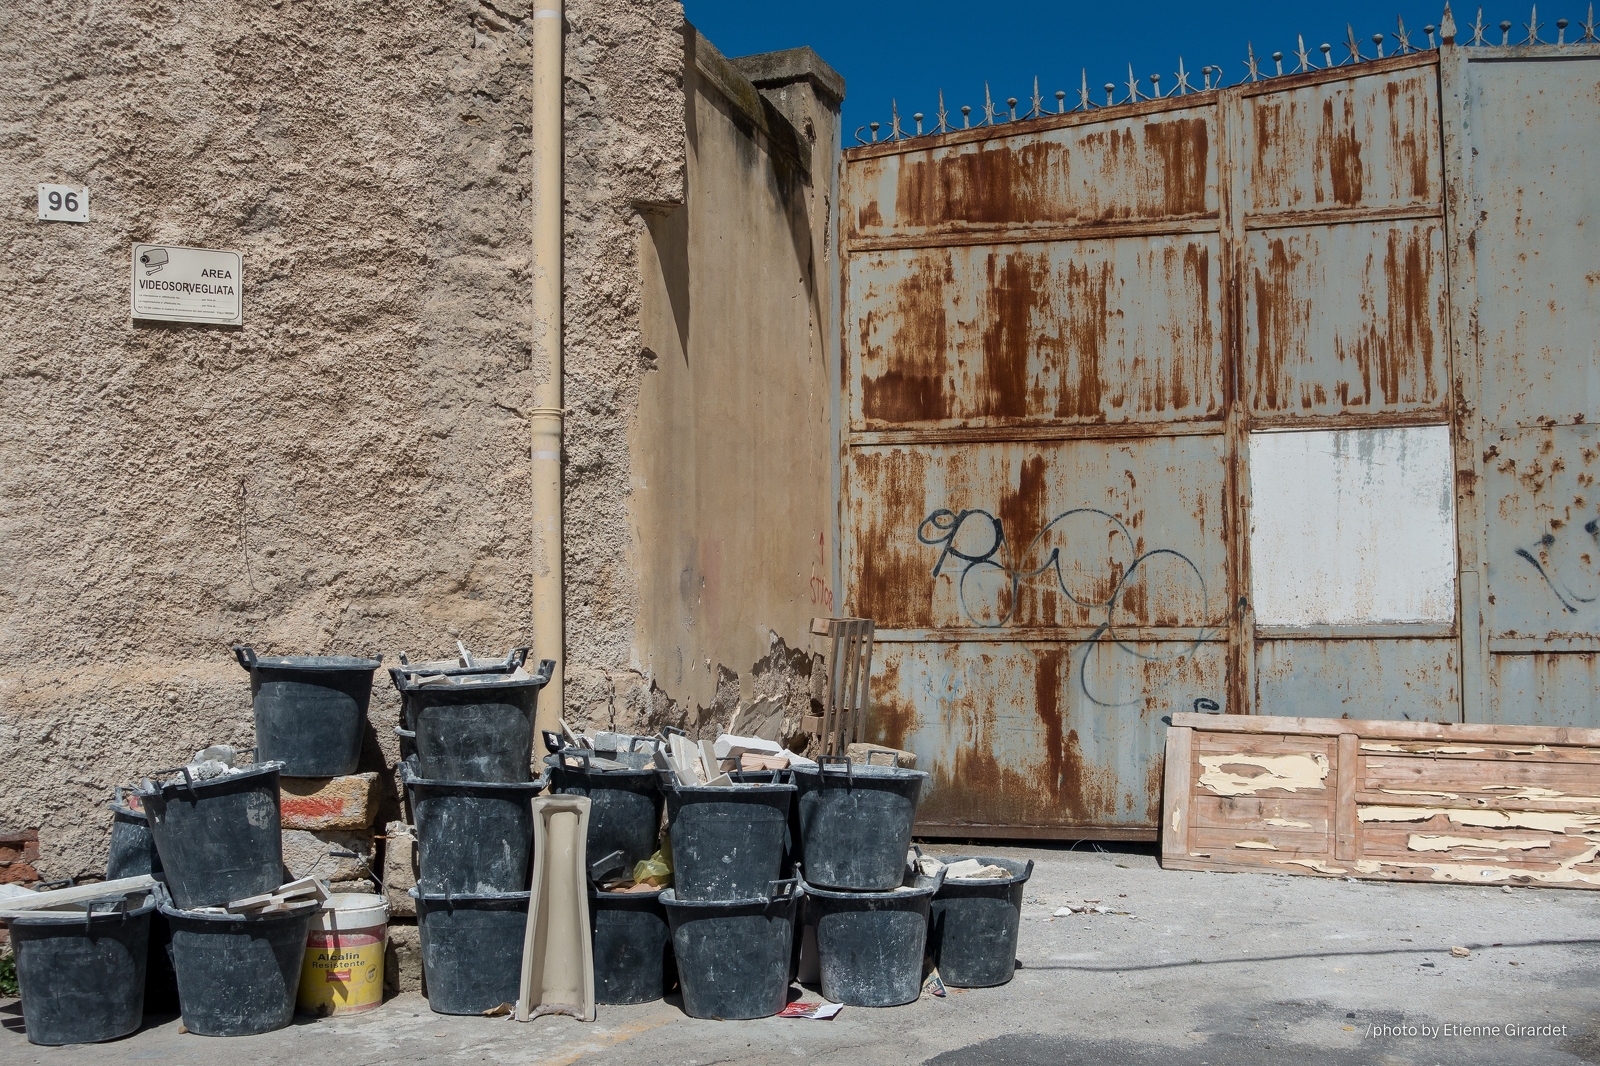 201804_02_DSC05089-buckets-construction-rusty-door-by-E-Girardet.jpg